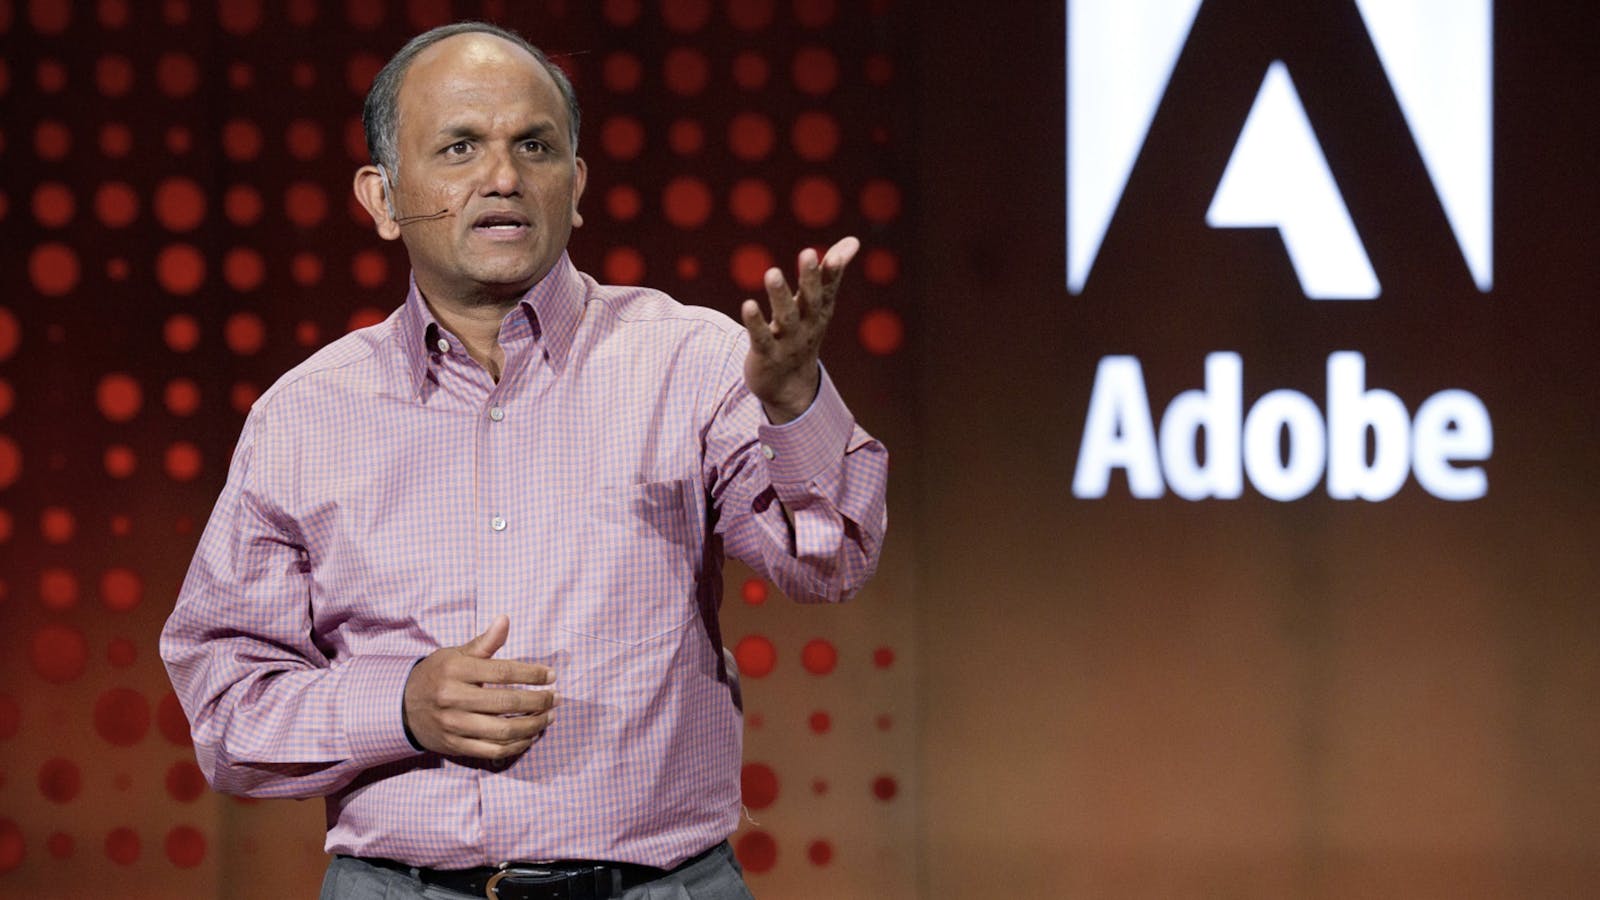 Adobe CEO Shantanu Narayen. Photo by Bloomberg